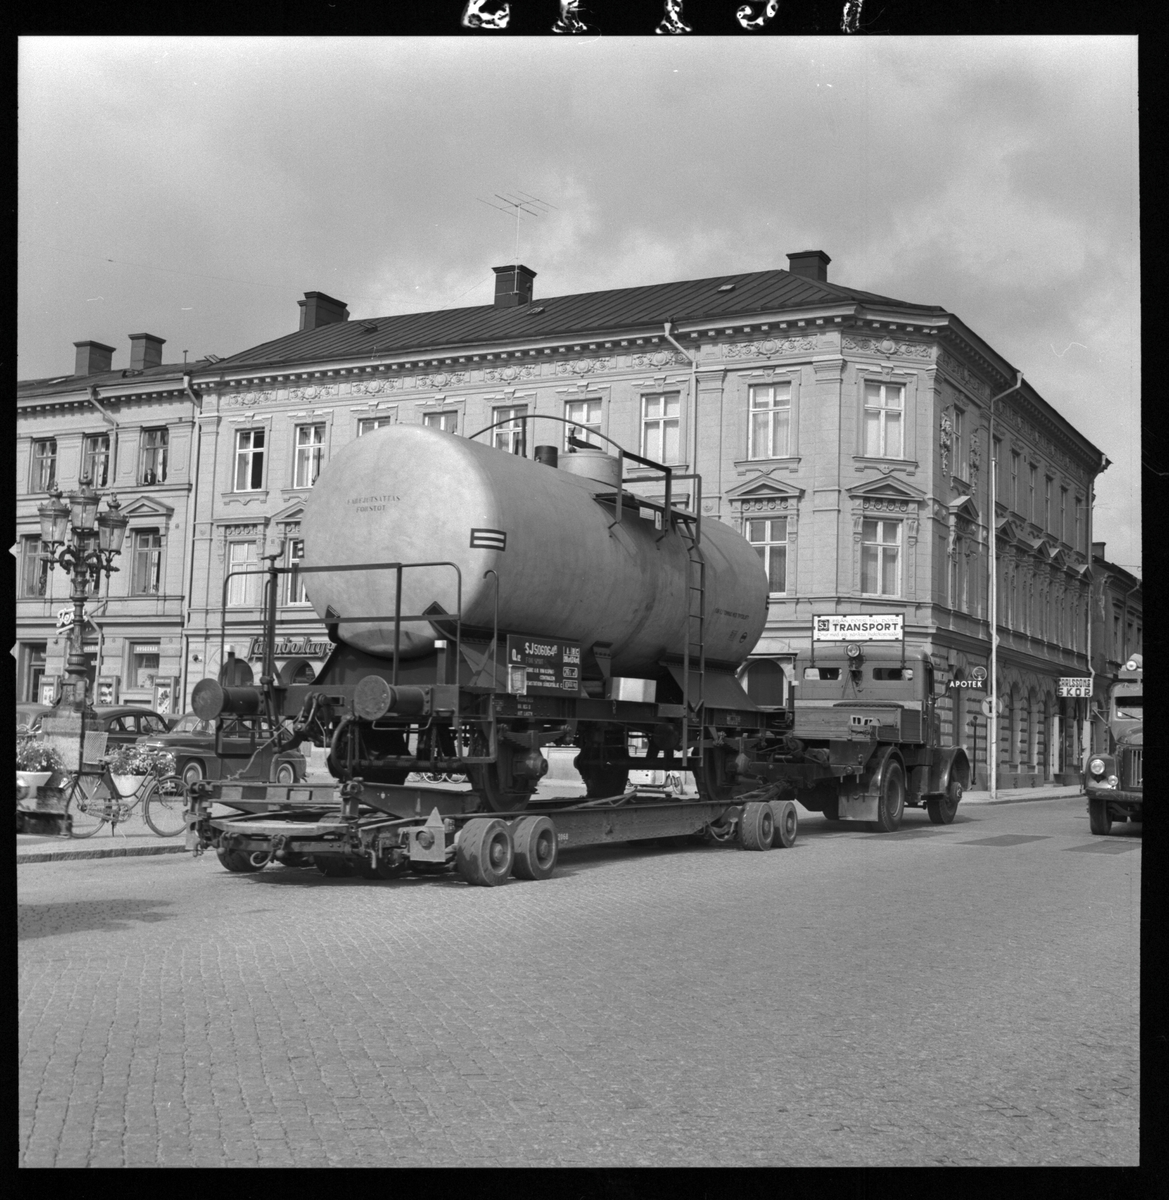 Kaelble lastbil med vagnbjörn lastad med tankvagn SJ Q12 506064.